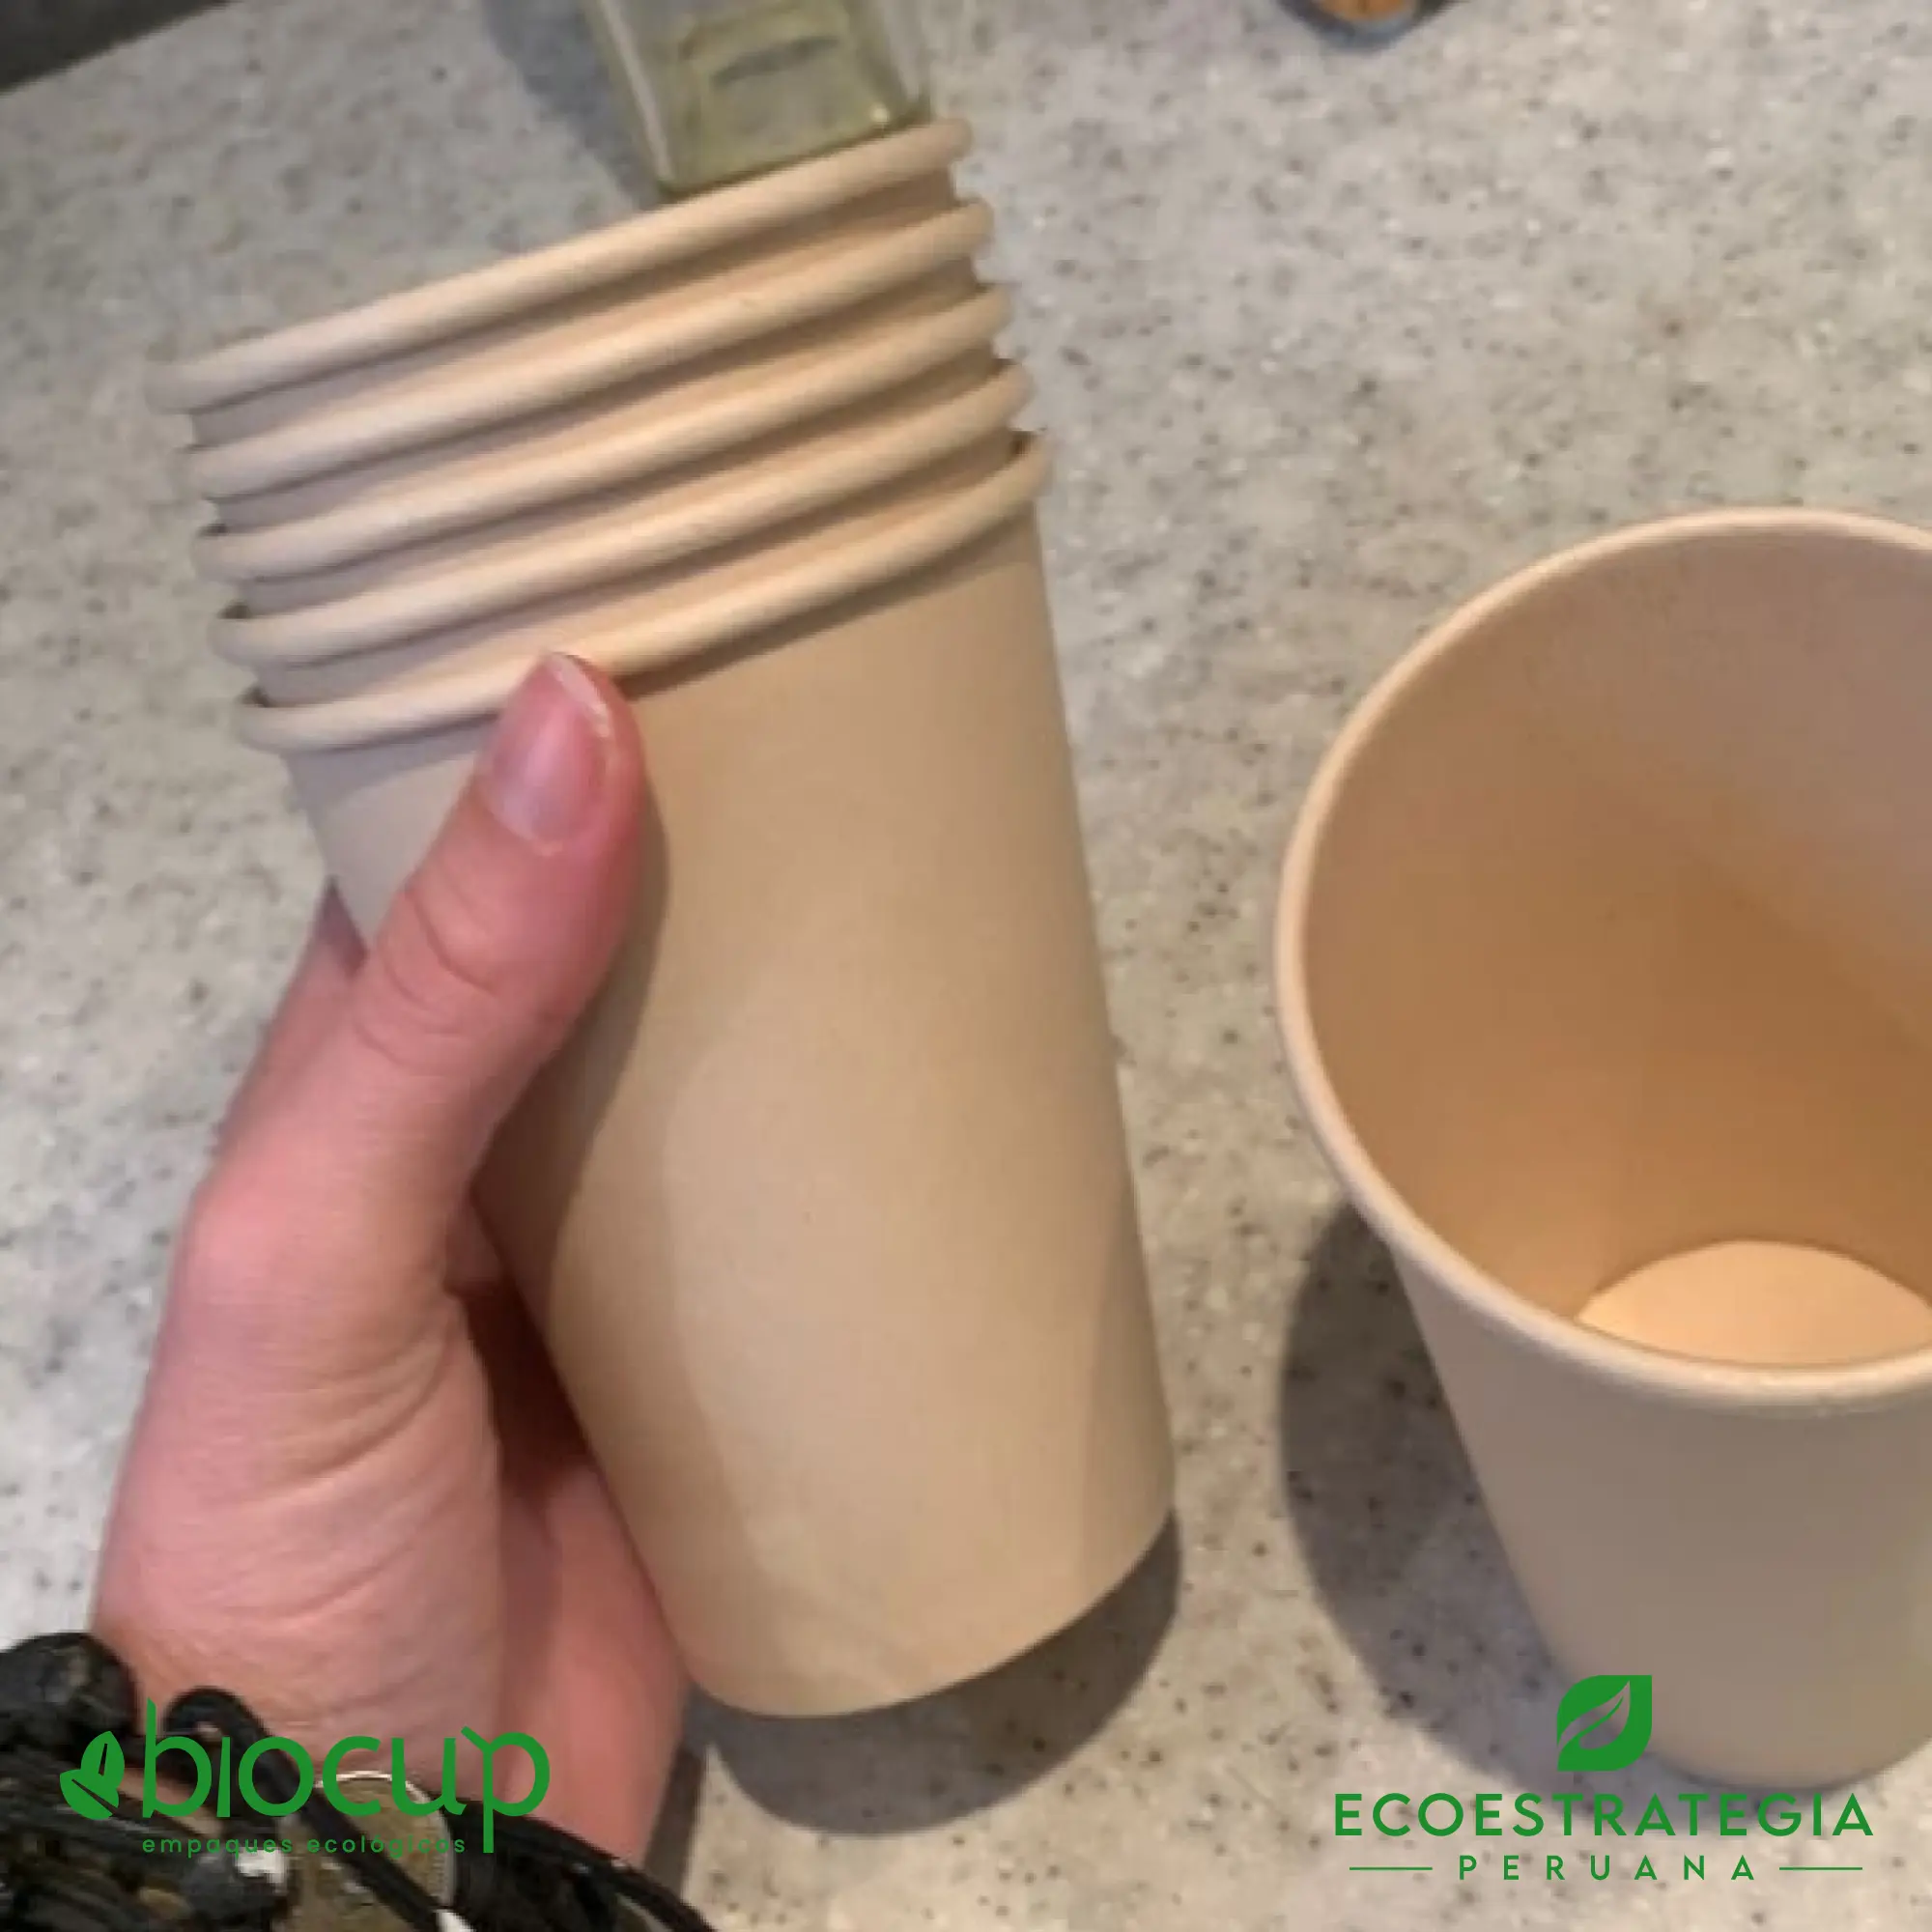 Vasos reciclable para bebidas calientes EP-B14 es tambien conocido como vasos de bambú biodegradables 14 oz, vasos compostable 14 oz, vaso desechable bambú, vasos biodegradable de bambú por mayor, vaso compostable 14 oz , vaso bambú, vaso bioform 14 oz, vaso bioform 12 oz, vaso pamolsa biodegradable, vaso por mayor, vaso compostable marrón, vasos para café Perú, vasos personalizable biodegradable, vaso hermético para delivery, vasos biodegradables para delivery, mayoristas de vasos biodegradables, distribuidores de vasos biodegradables, importadores de vasos biodegradables, vasos biodegradables eco estrategia peruana